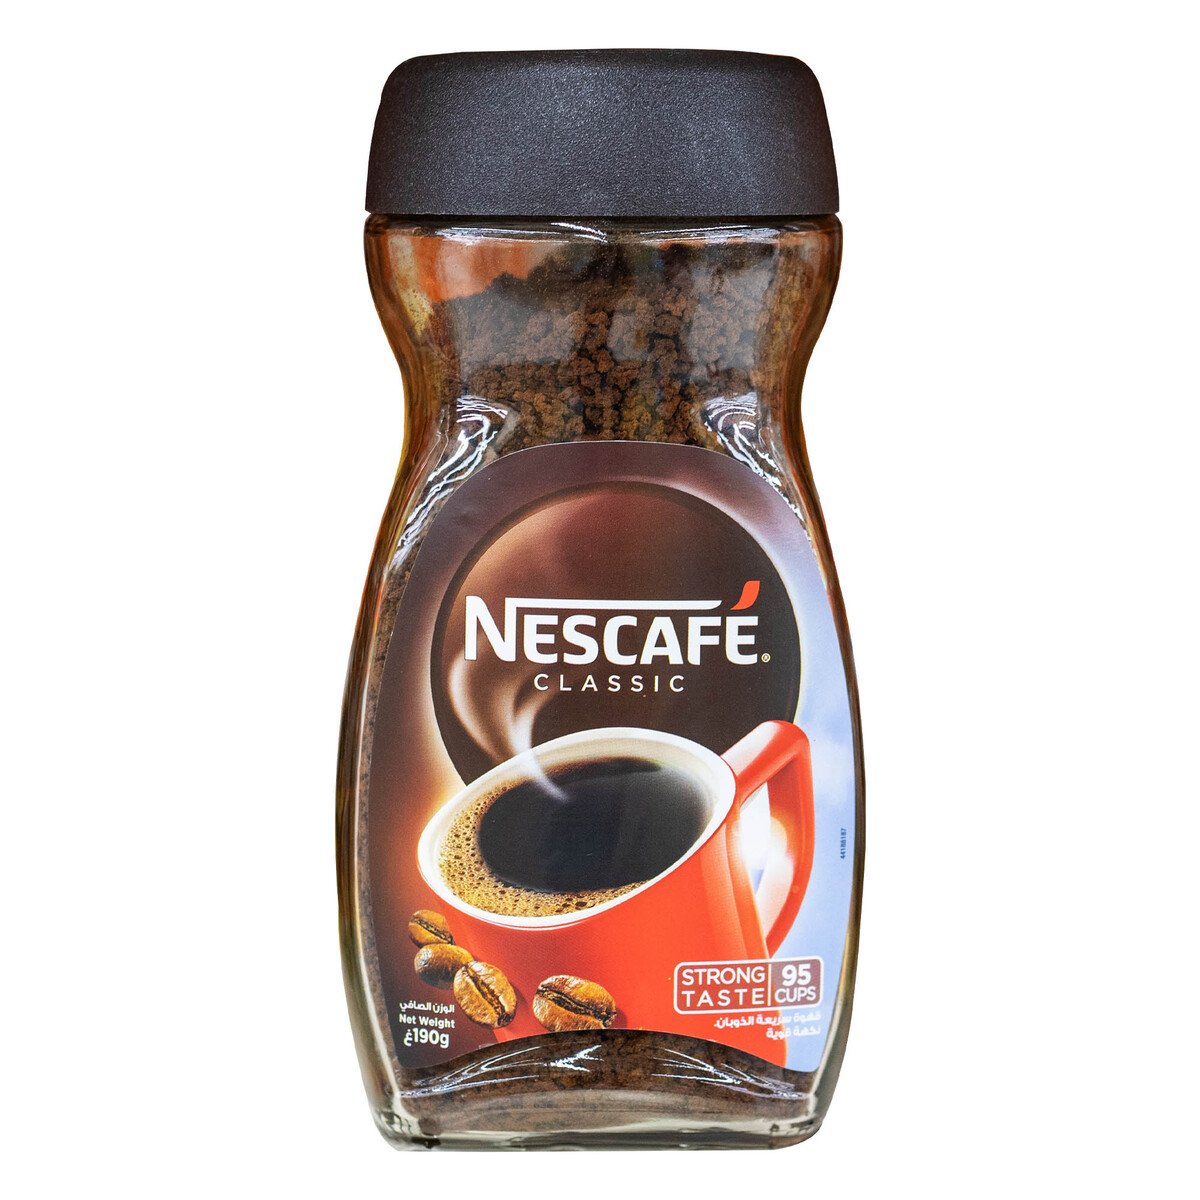 اشتري قم بشراء نسكافية كلاسيك قهوة 190 جم Online at Best Price من الموقع - من لولو هايبر ماركت Coffee في السعودية